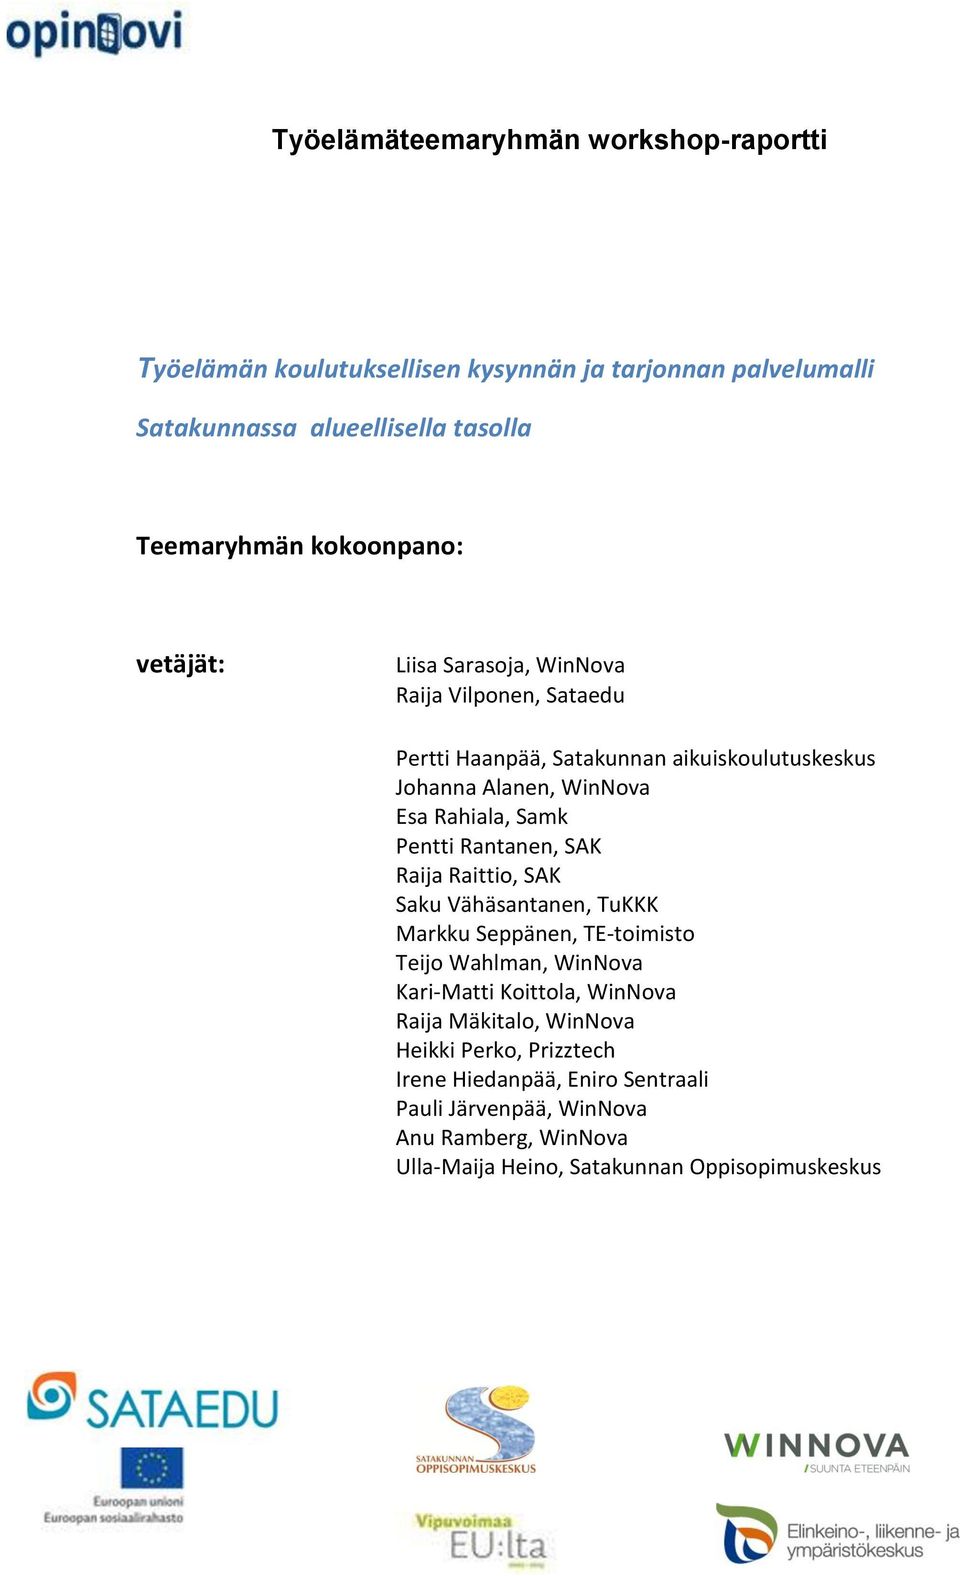 Samk Pentti Rantanen, SAK Raija Raittio, SAK Saku Vähäsantanen, TuKKK Markku Seppänen, TE-toimisto Teijo Wahlman, WinNova Kari-Matti Koittola, WinNova Raija